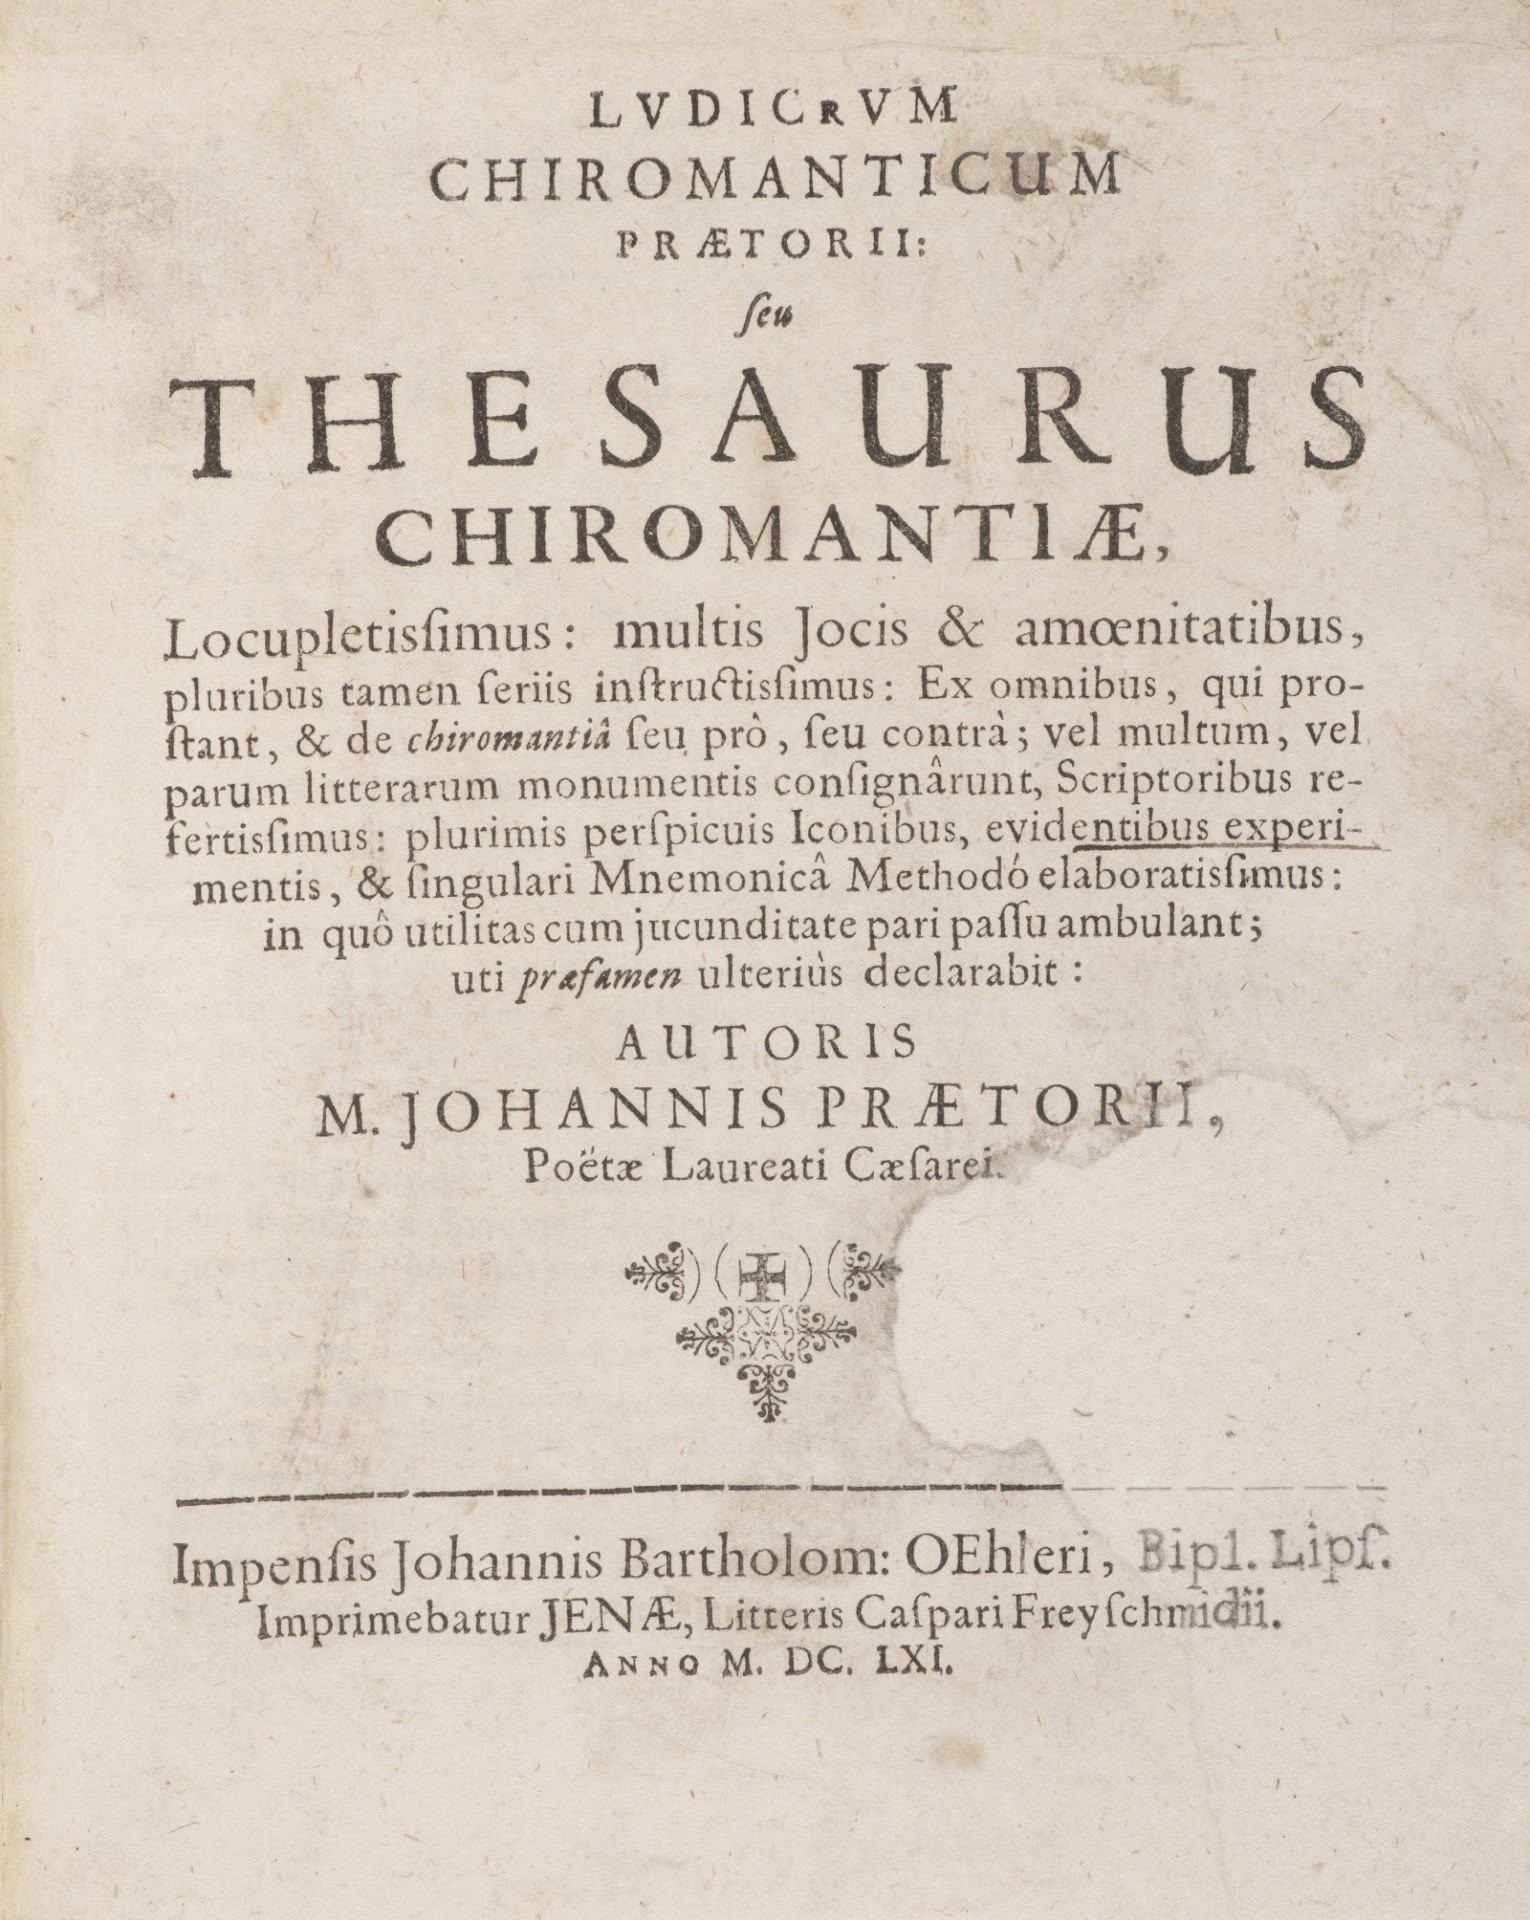 M.J. PRAETORIUS: LUDICRUM CHIROMANTICUM SEU THESAURUS CHIROMANTIAE 1661 Period parchment binding